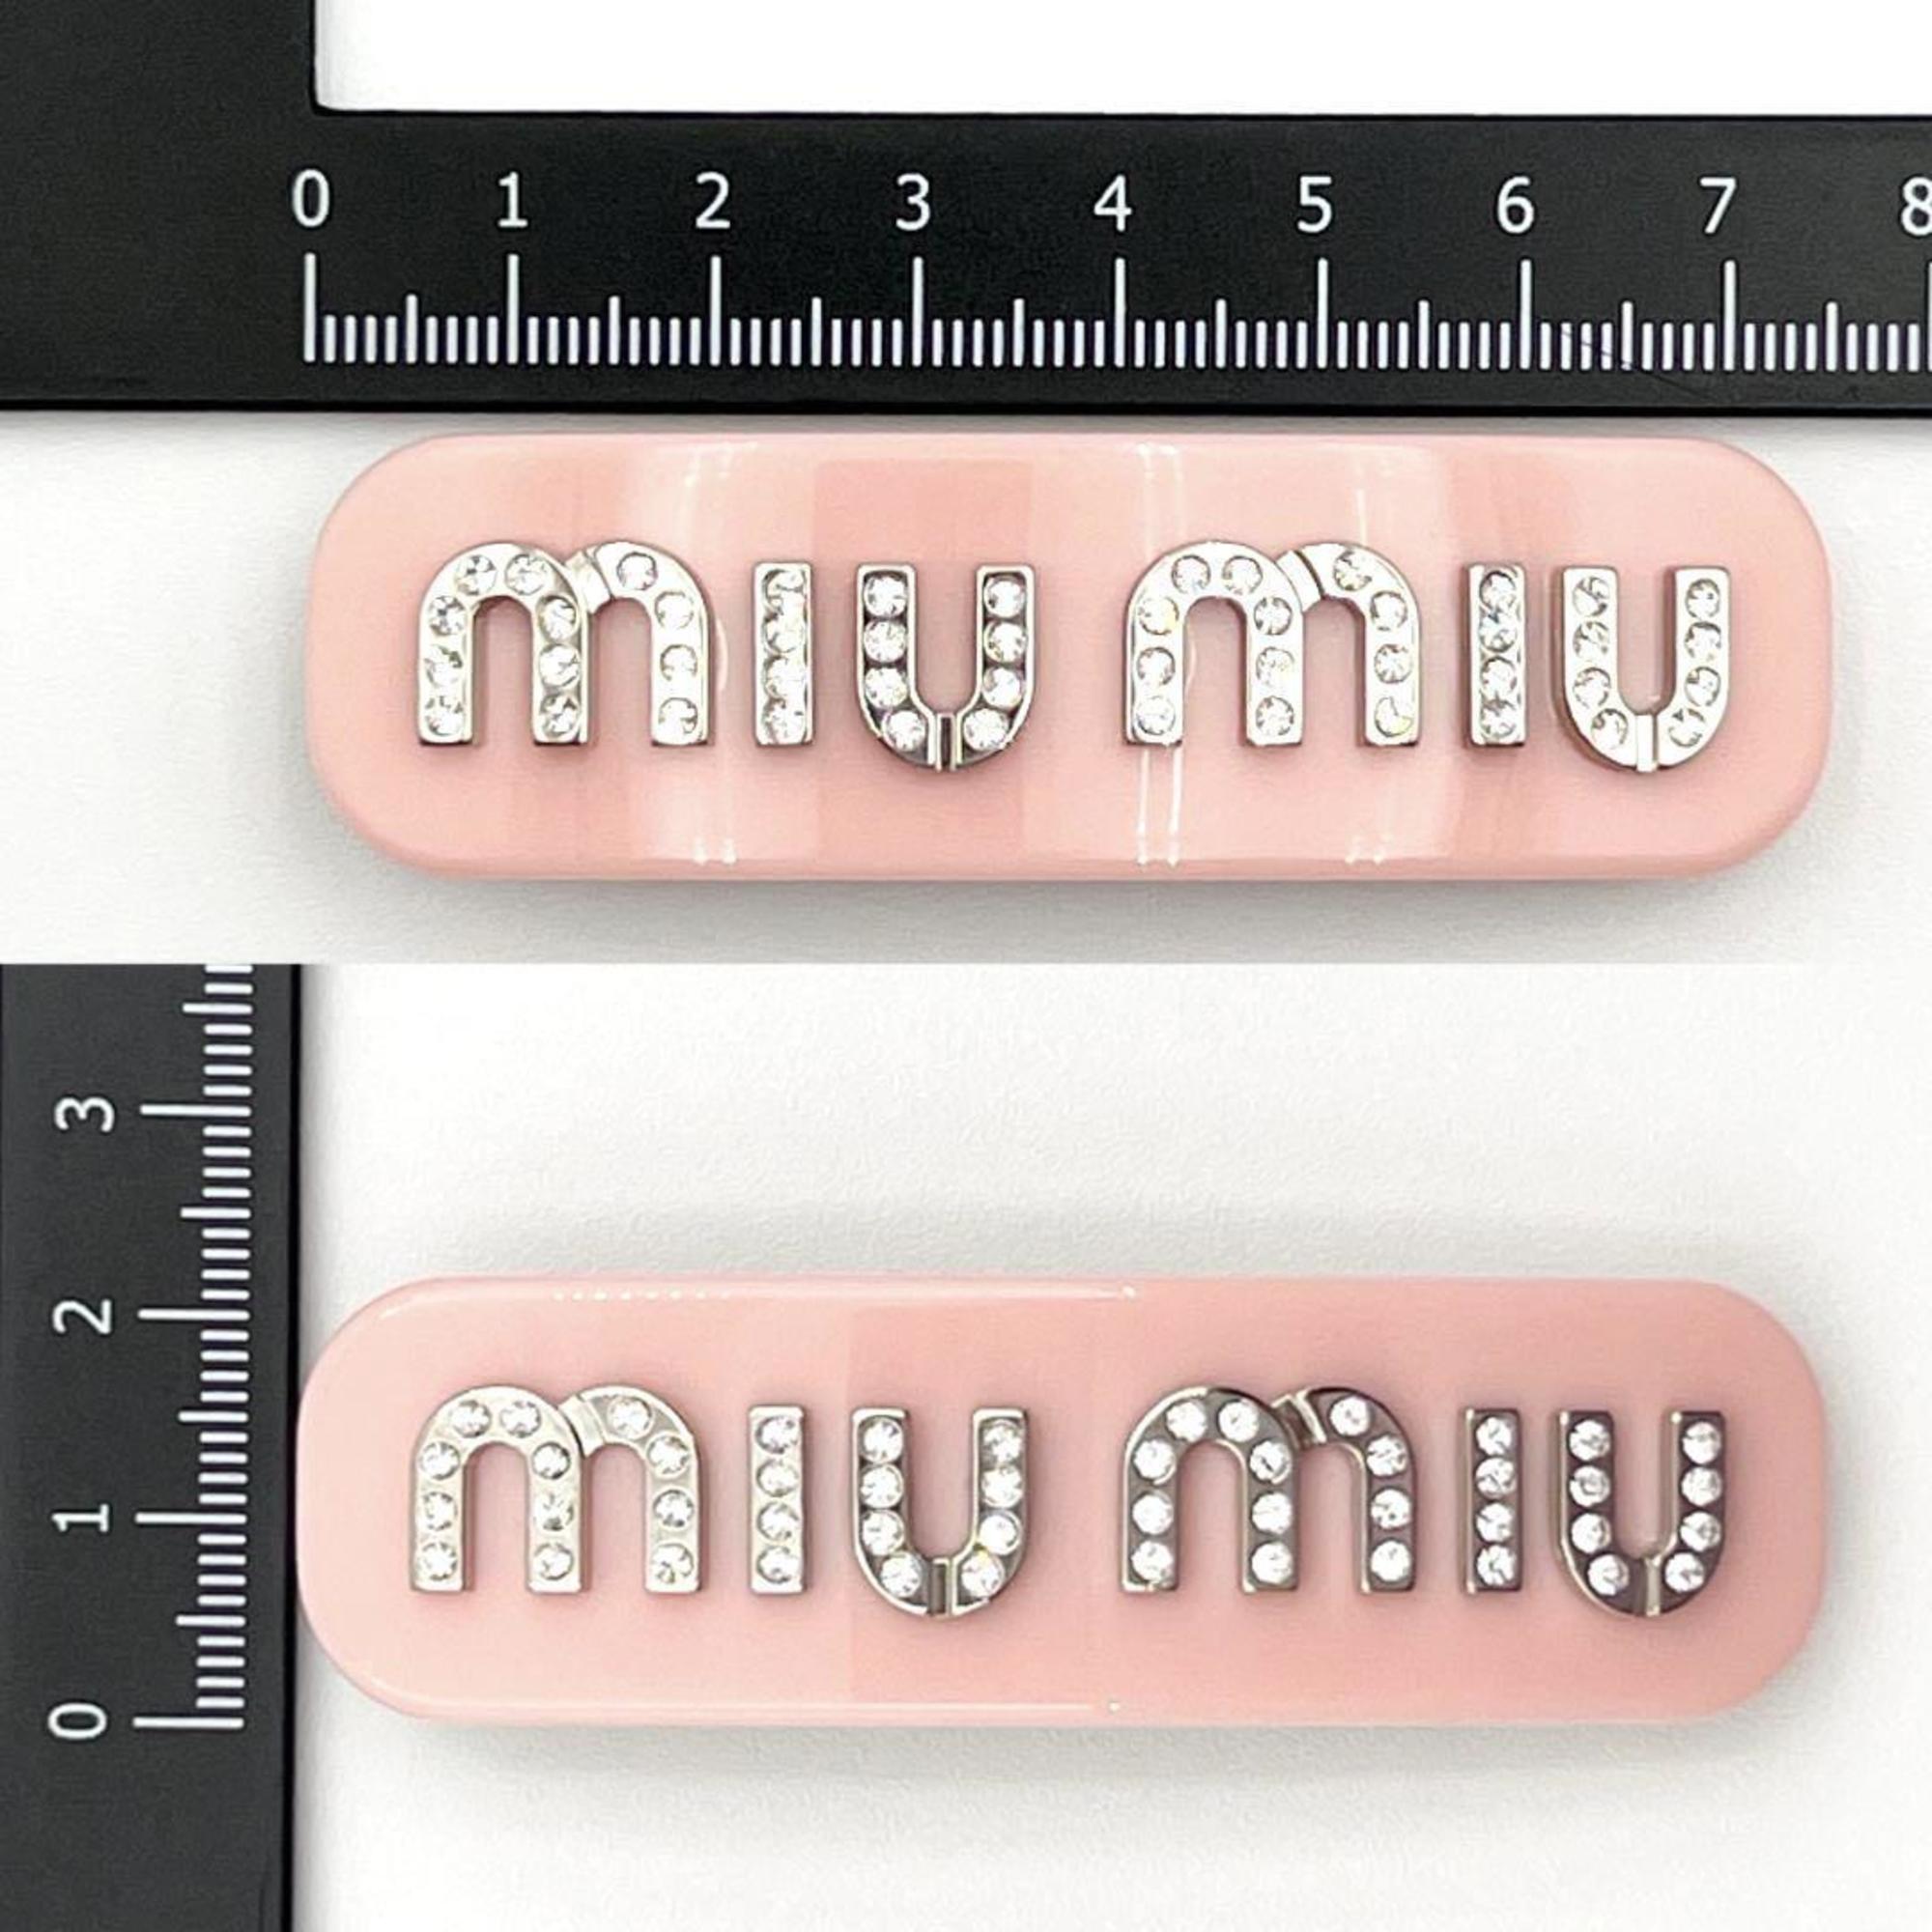 Miu Miu Miu Women's Barrette Hairpin Plex Metal Hair Clip